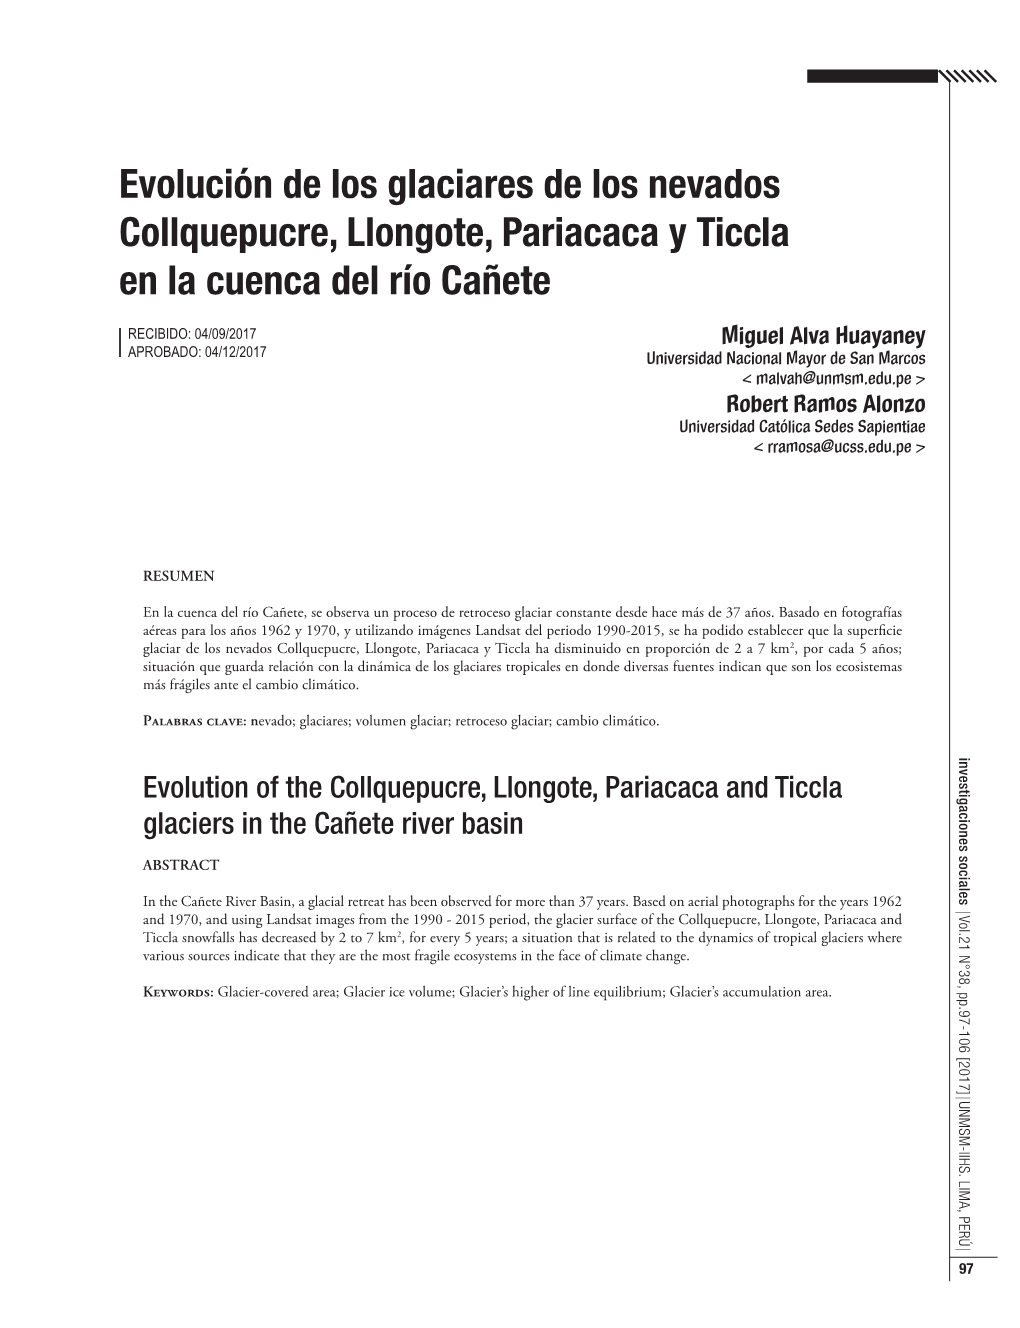 Evolución De Los Glaciares De Los Nevados Collquepucre, Llongote, Pariacaca Y Ticcla En La Cuenca Del Río Cañete